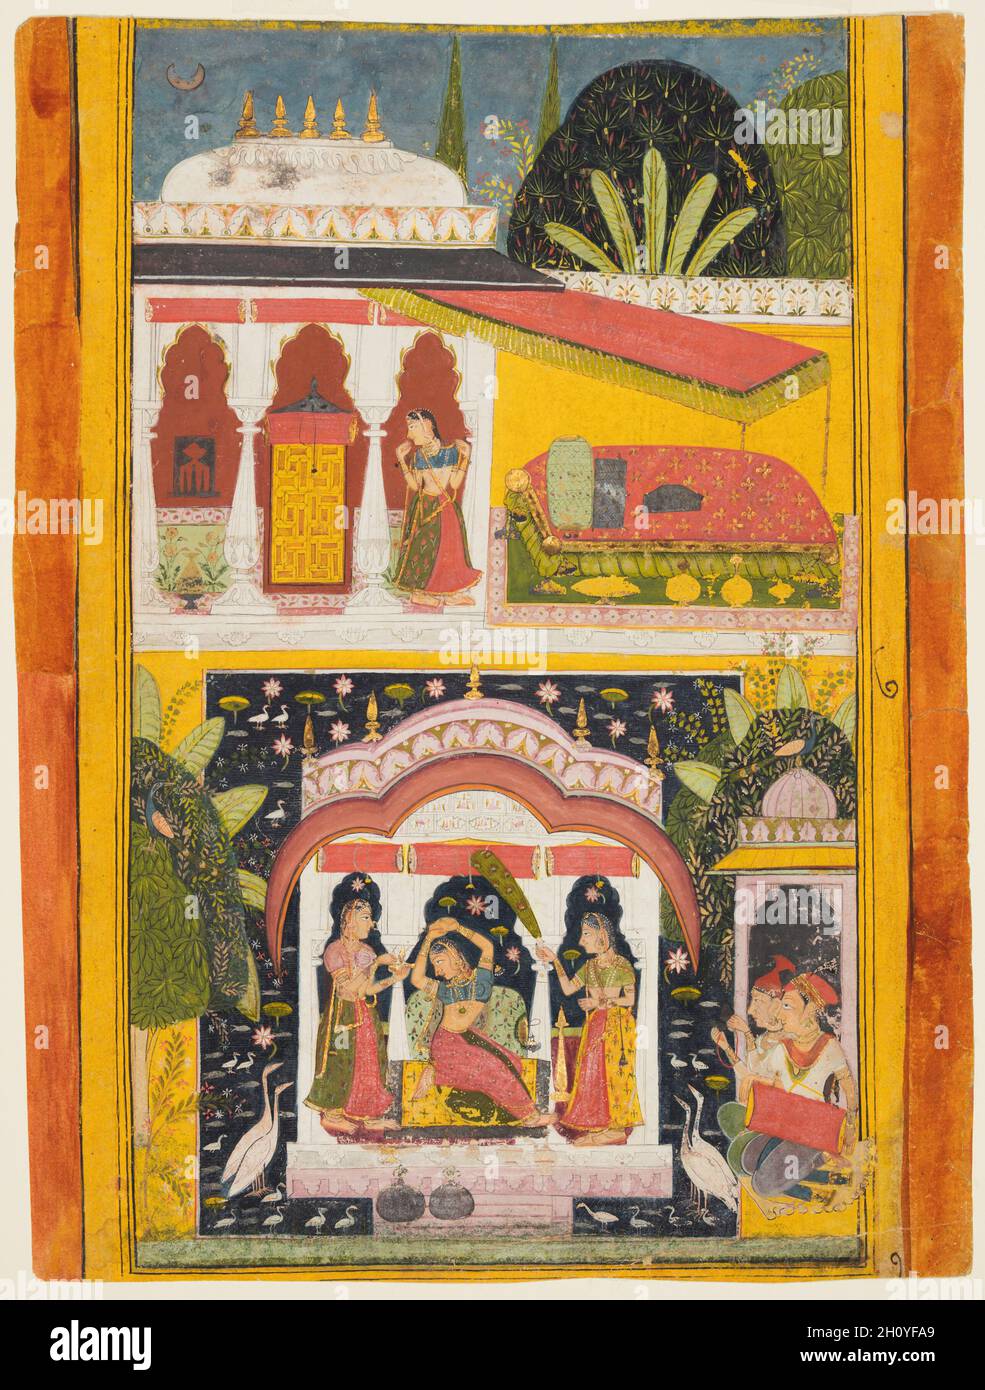 Une femme royale dans un pavillon: Desavarari Ragini de Dipak, d'un Ragamala, c.1695. Gomme tempera, argent et or sur papier; page : 38.1 x 28.9 cm (15 x 11 3/8 po.).Un somptueux palais dépeint les quartiers féminins.Dans le registre supérieur, une femme s'approche d'un lit fait sous une verrière sur une terrasse donnant sur une piscine de lotus au milieu de laquelle est un pavillon de plaisir.Un accompagnateur tient un fouet en plumes de queue de paon pour indiquer le statut royal de la femme au centre; deux musiciens jouent du tambour et des cymbales dans le coin inférieur droit. Banque D'Images